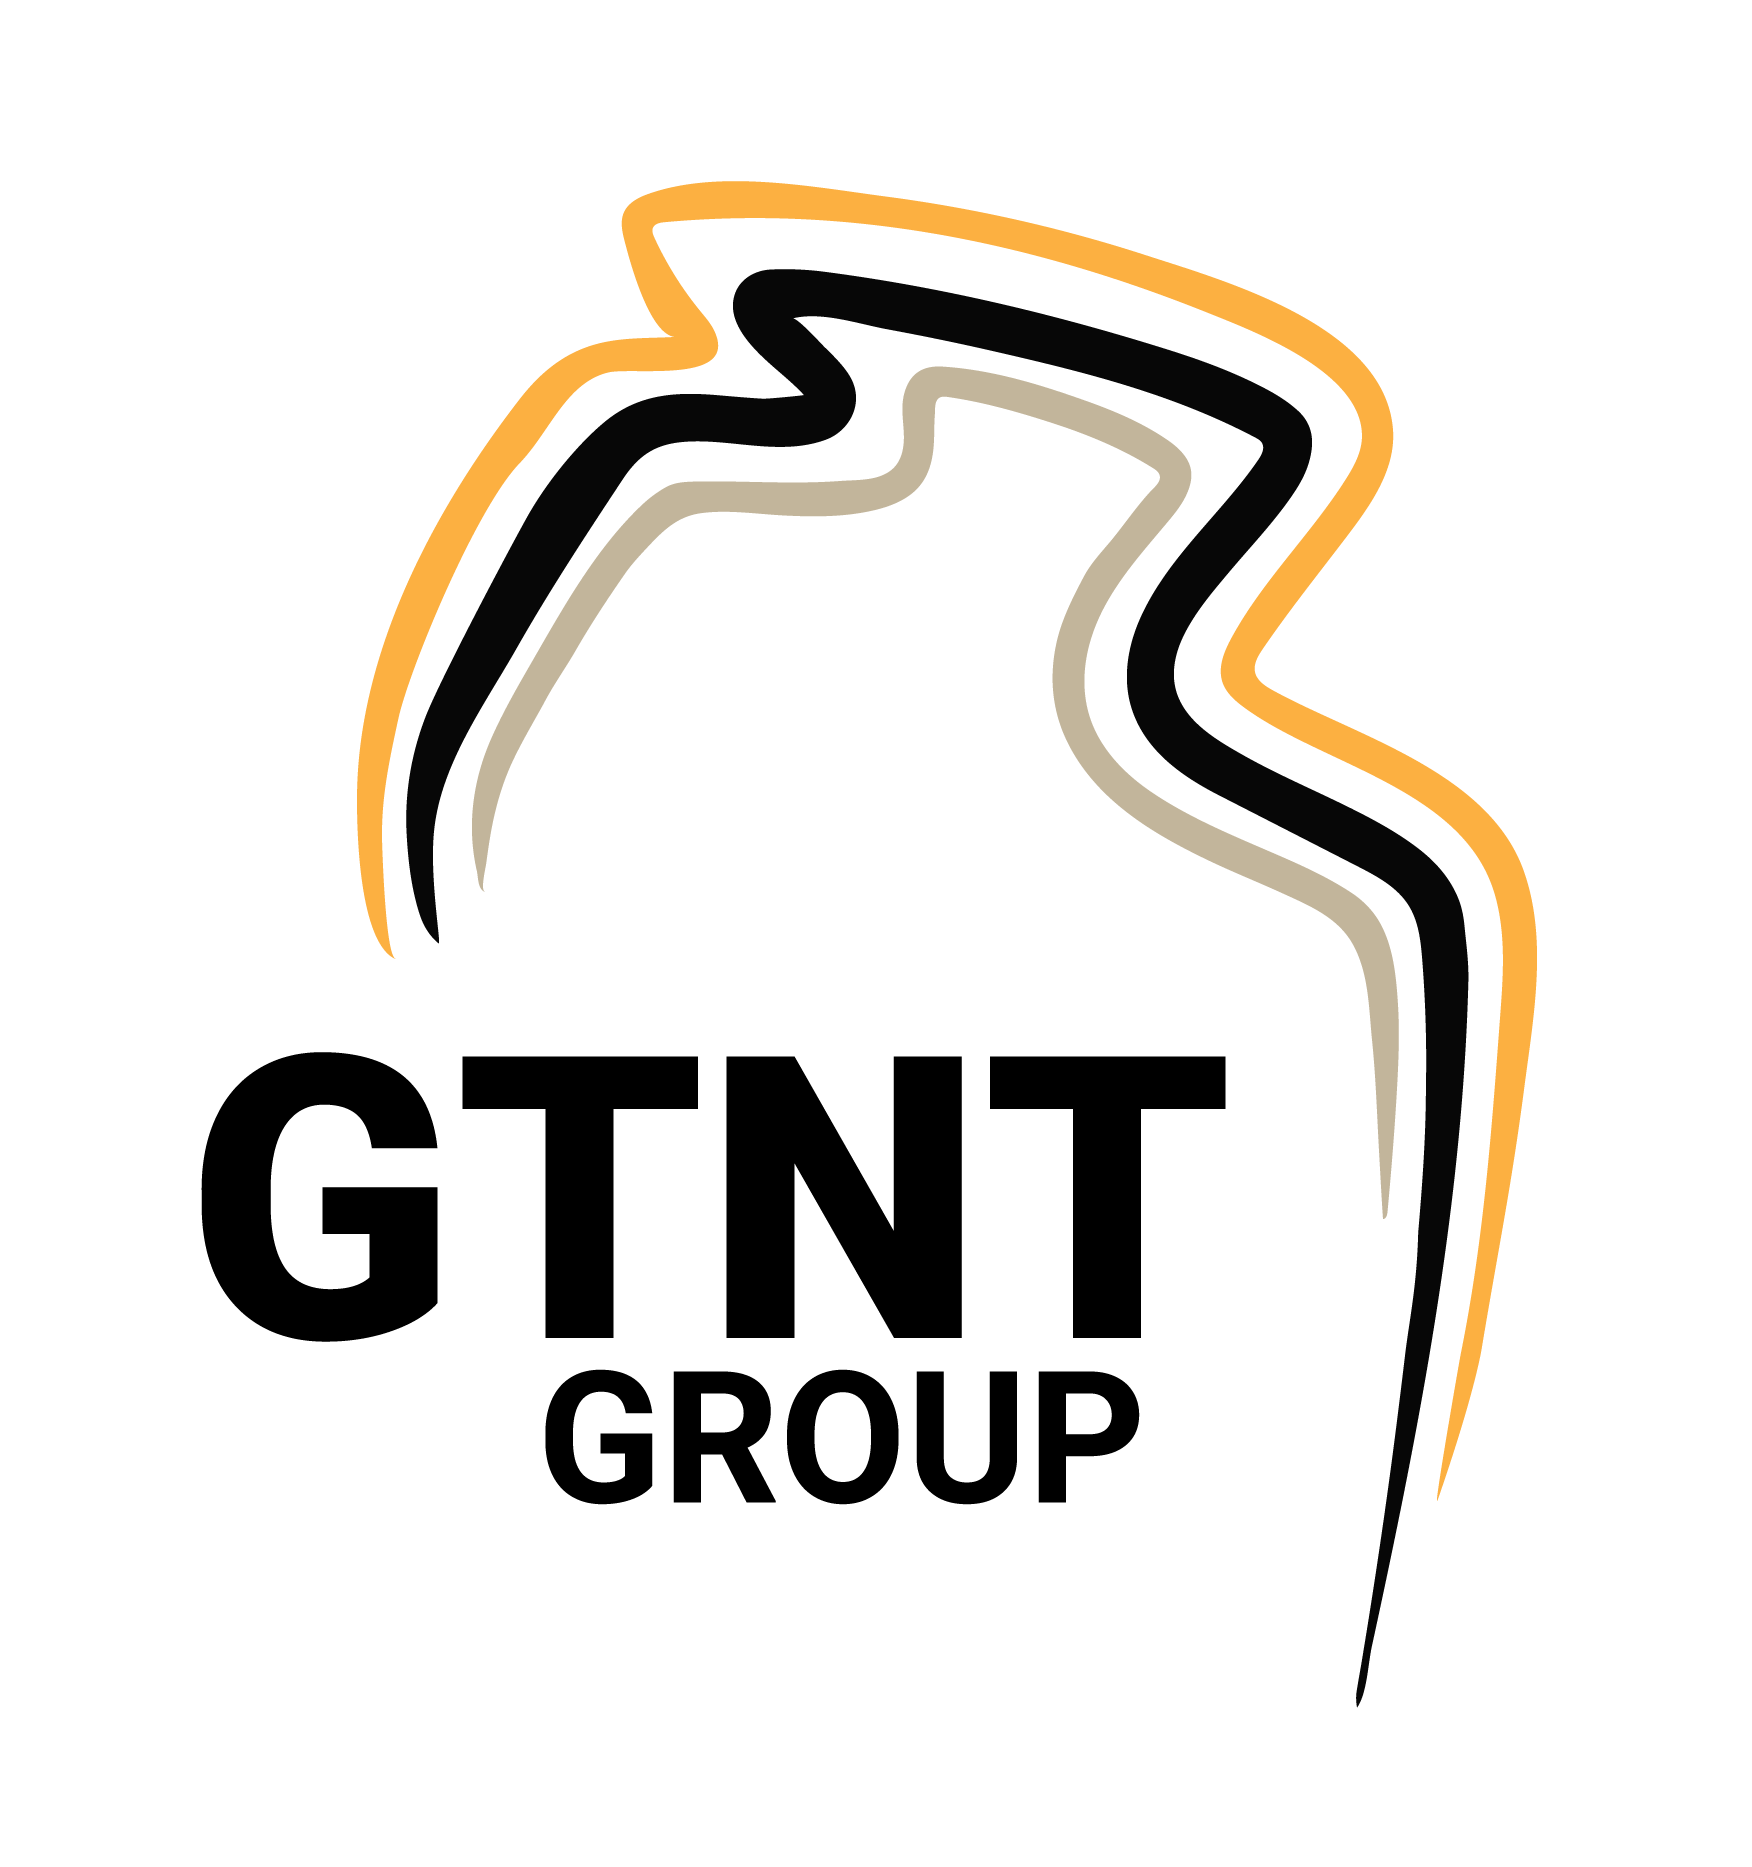 GTNT Creating Territory Futures Through Apprenticeships